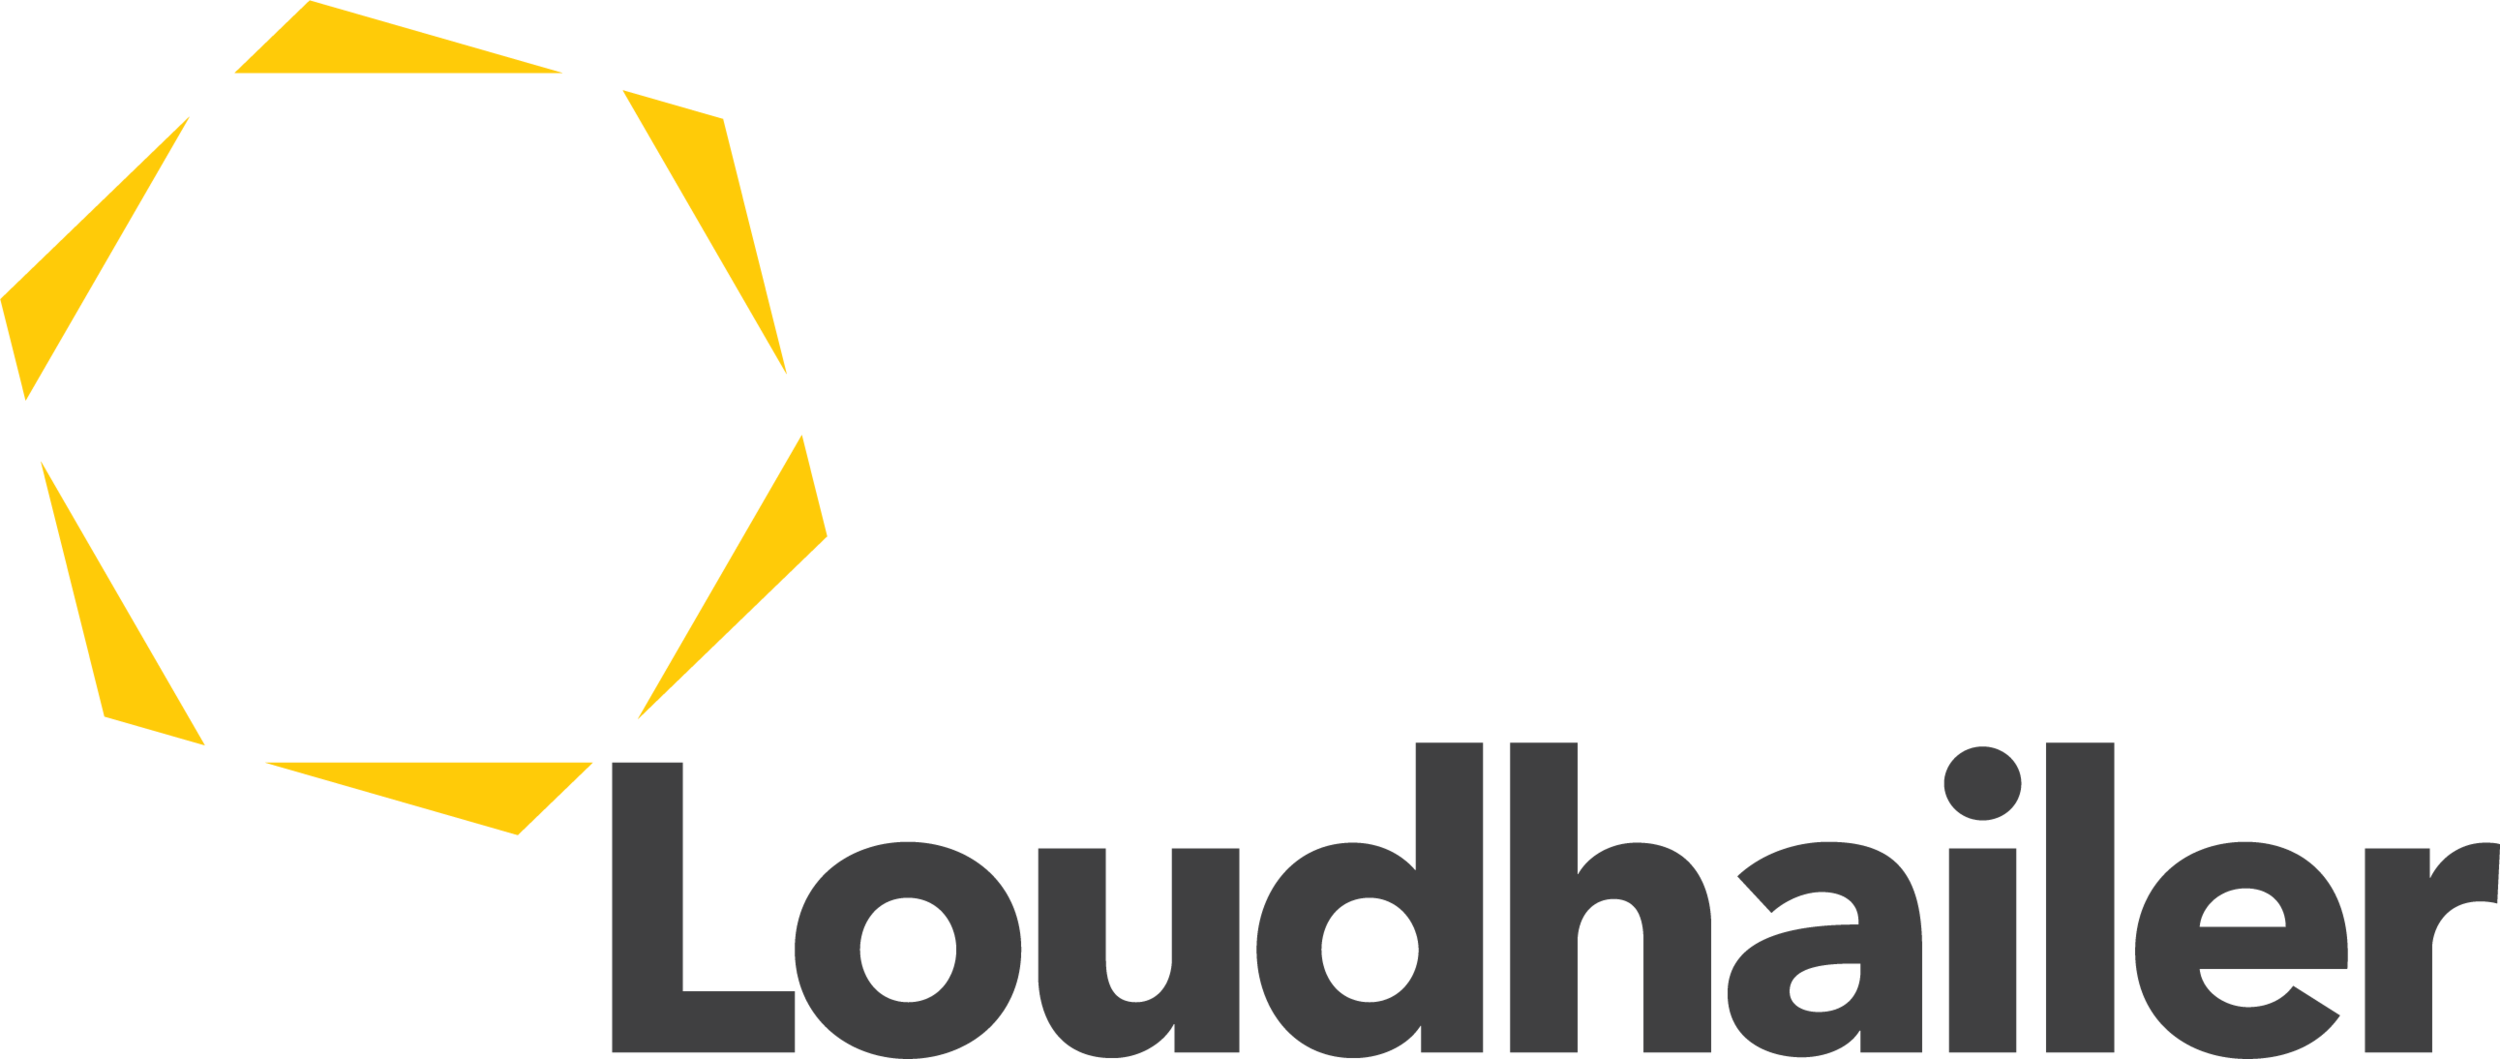 Loudhailer Logo.png